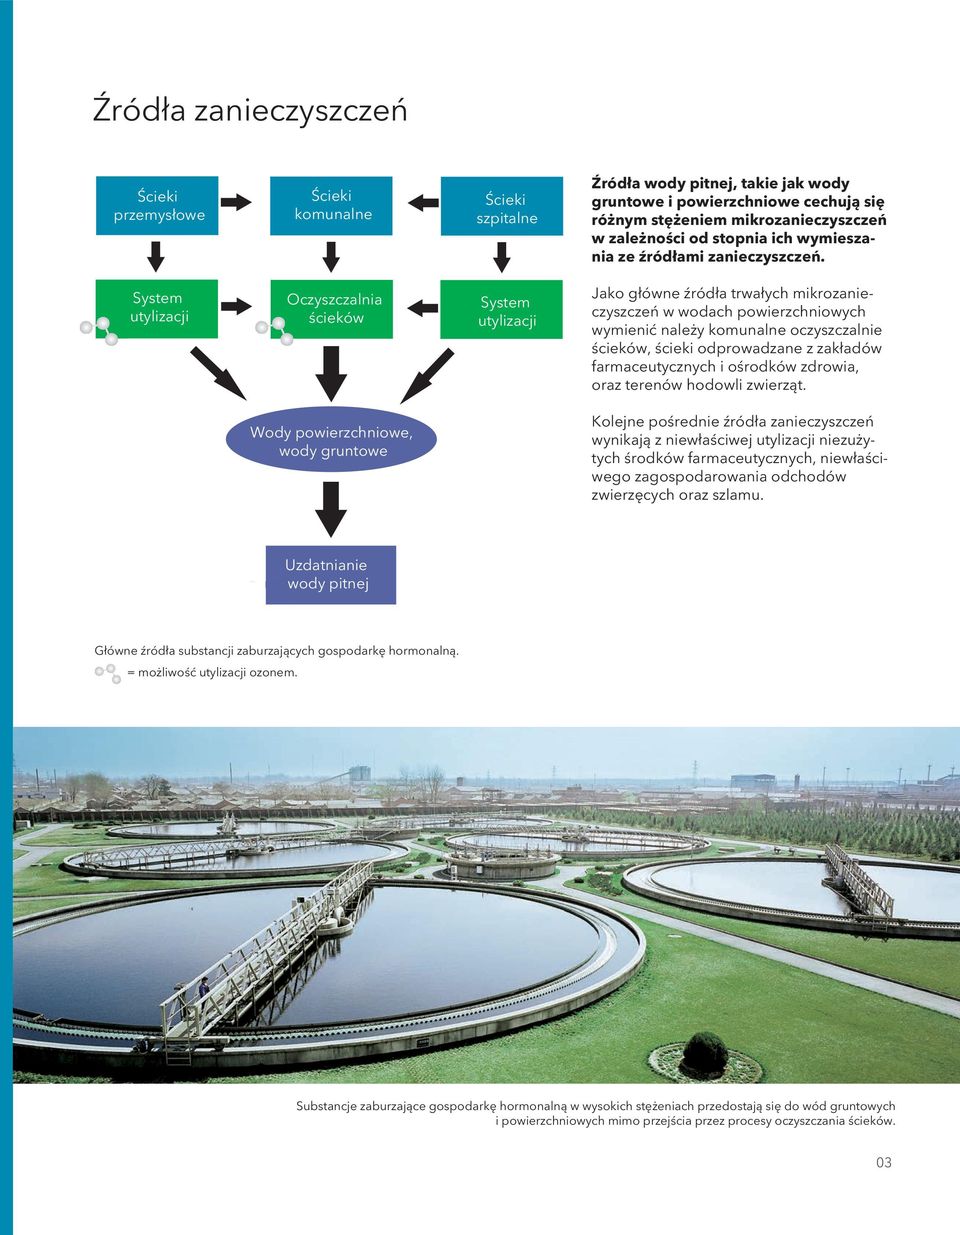 System utylizacji Oczyszczalnia ścieków System utylizacji Jako główne źródła trwałych mikrozanieczyszczeń w wodach powierzchniowych wymienić należy komunalne oczyszczalnie ścieków, ścieki